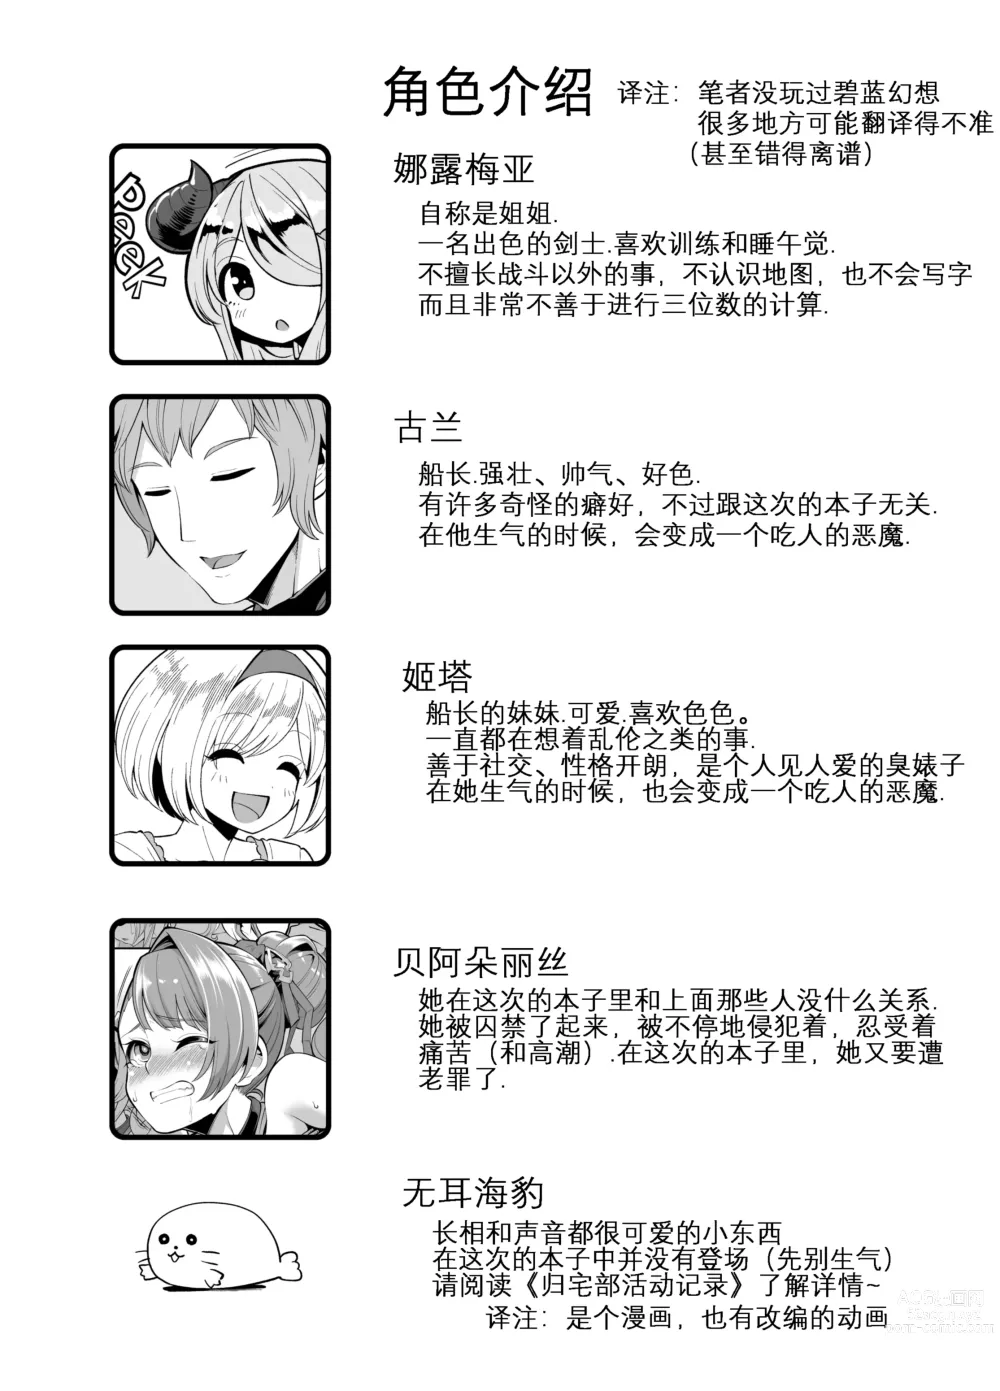 Page 4 of doujinshi 将角人族美少女骗去啪啪啪 (decensored)